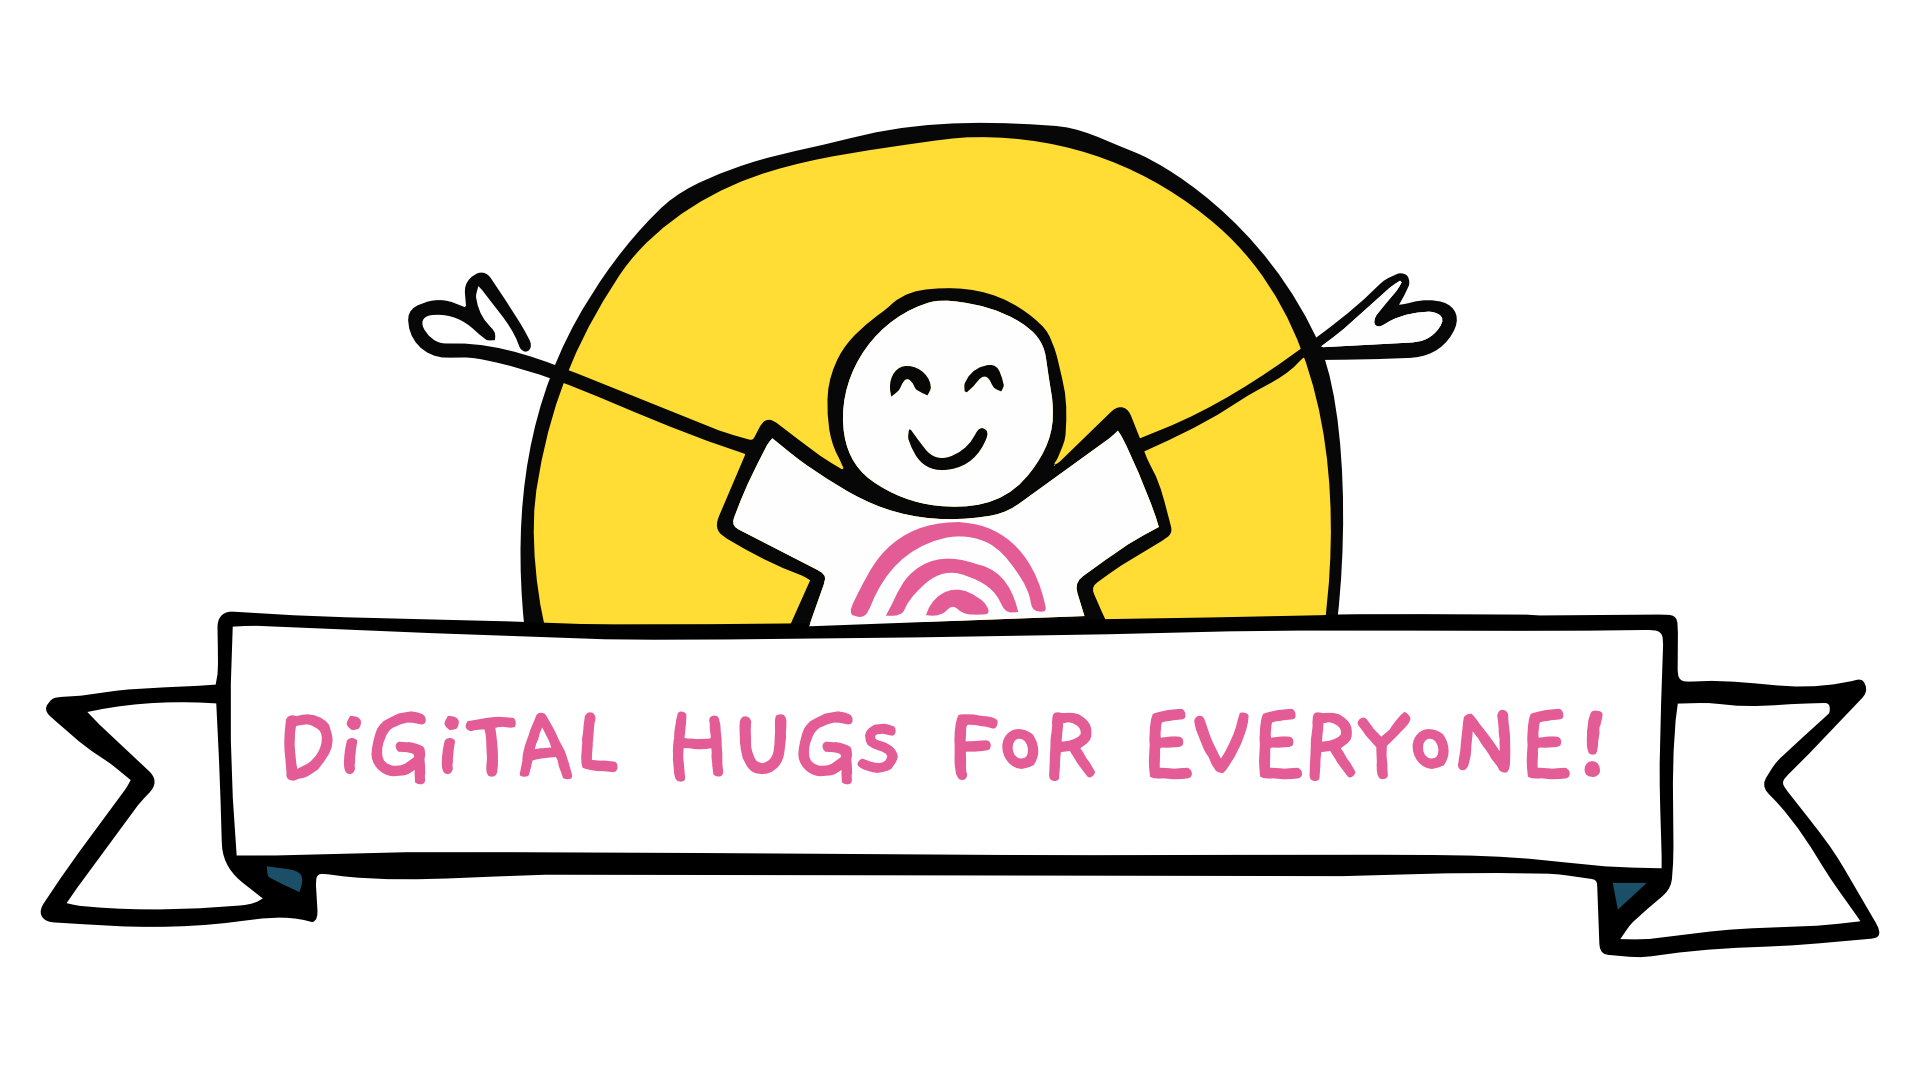 Digital Hugs for everyone!